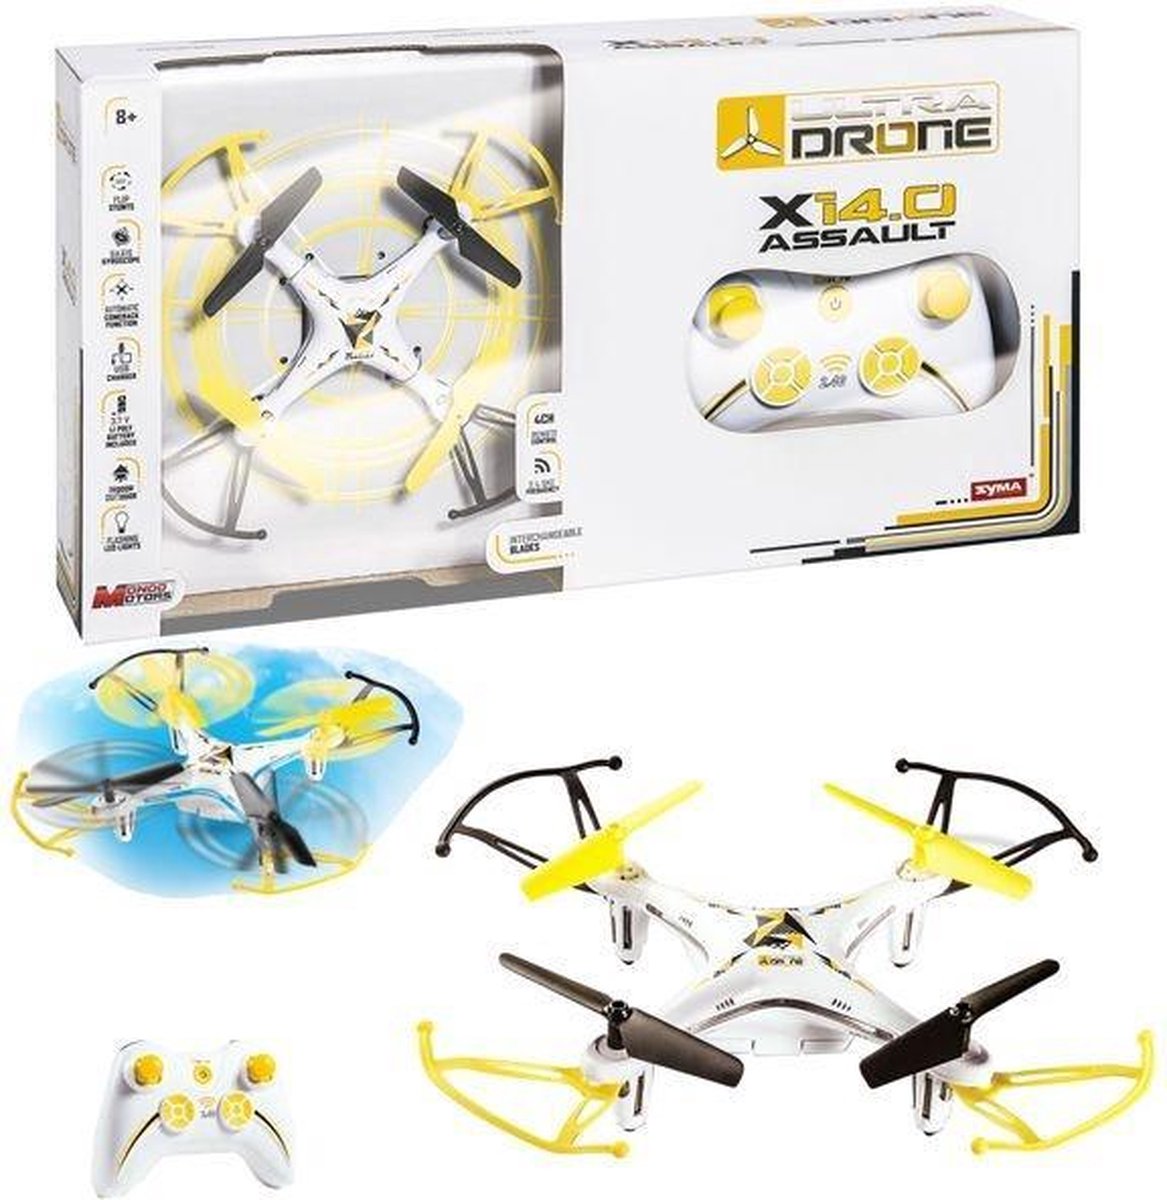 Ultra Drone Rc X14.0 Assault Quadcopter | bol.com